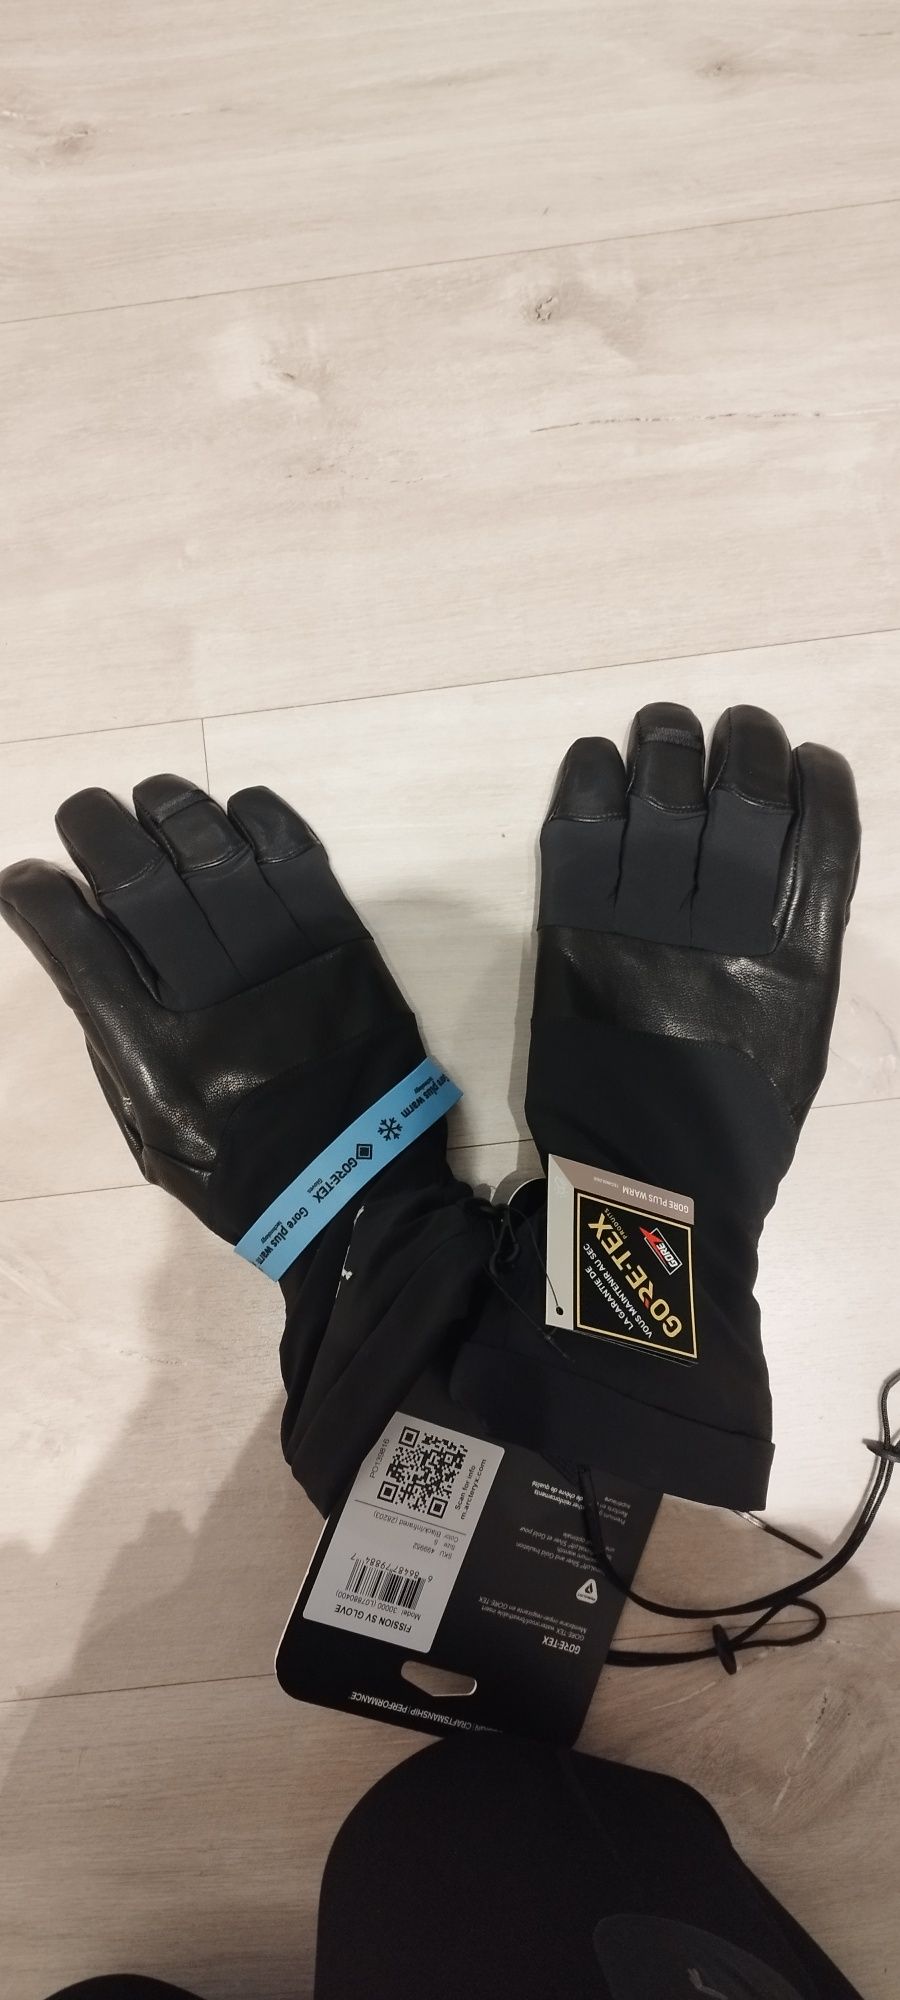 Rękawiczki narciarskie Arcteryx GORE-TEX czarne rozmiar S